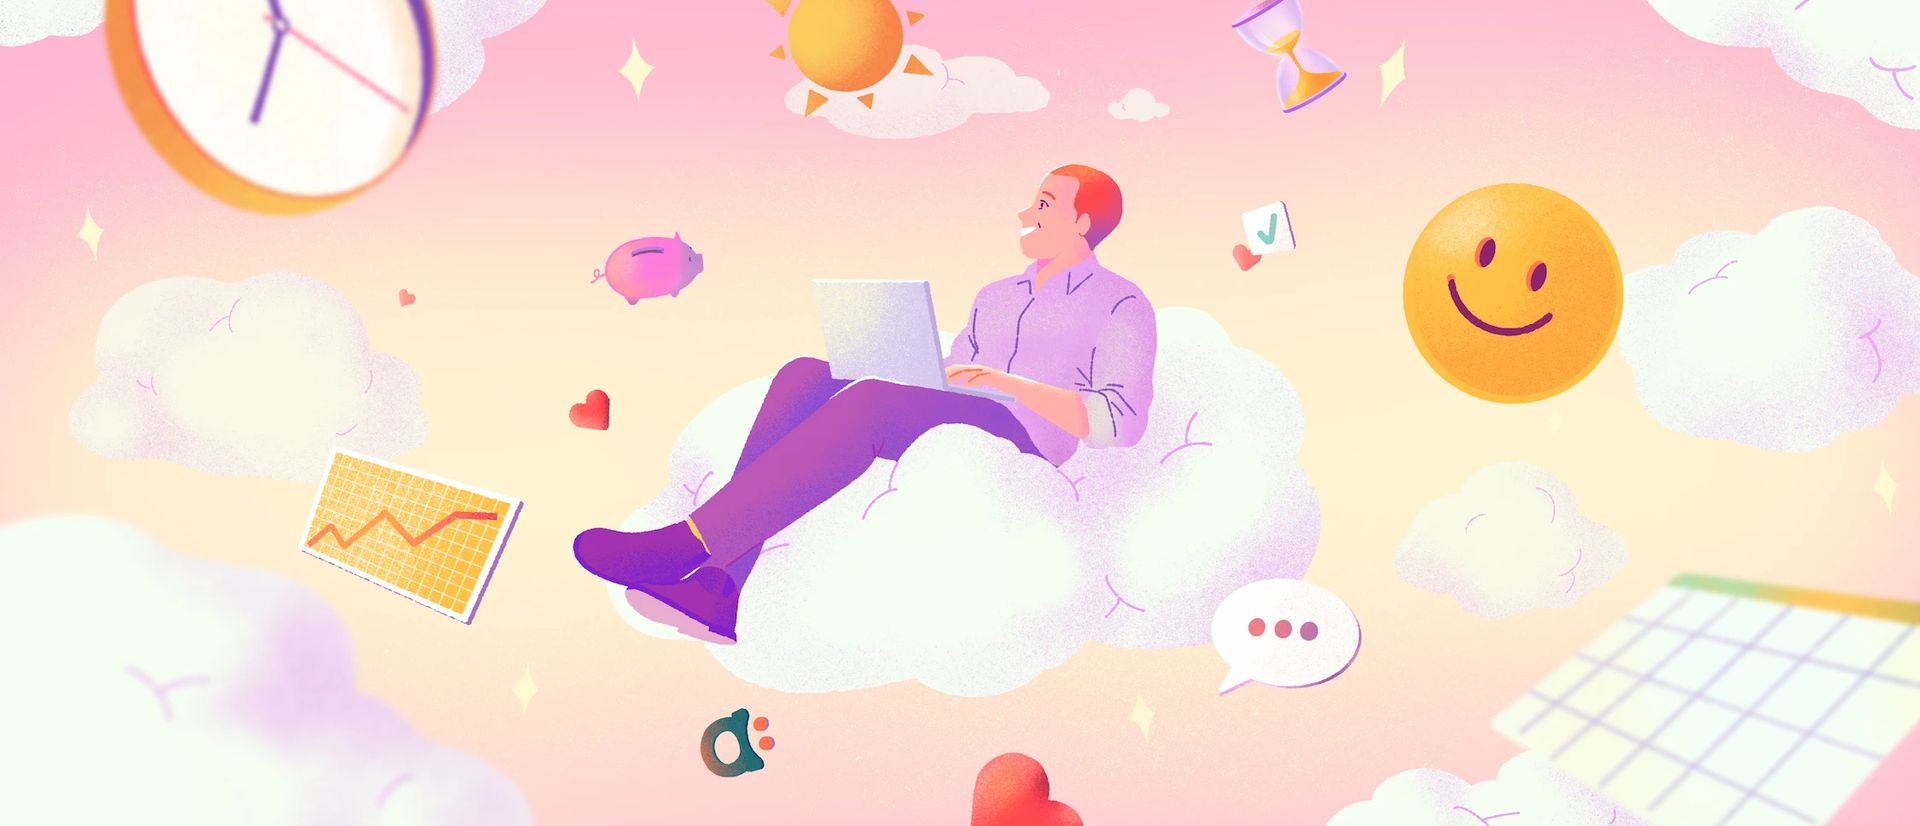 Homme assis sur un nuage avec un ordinateur portable sur les genoux, entouré d'éléments flottants : horloge, smiley, nuages, graphiques.